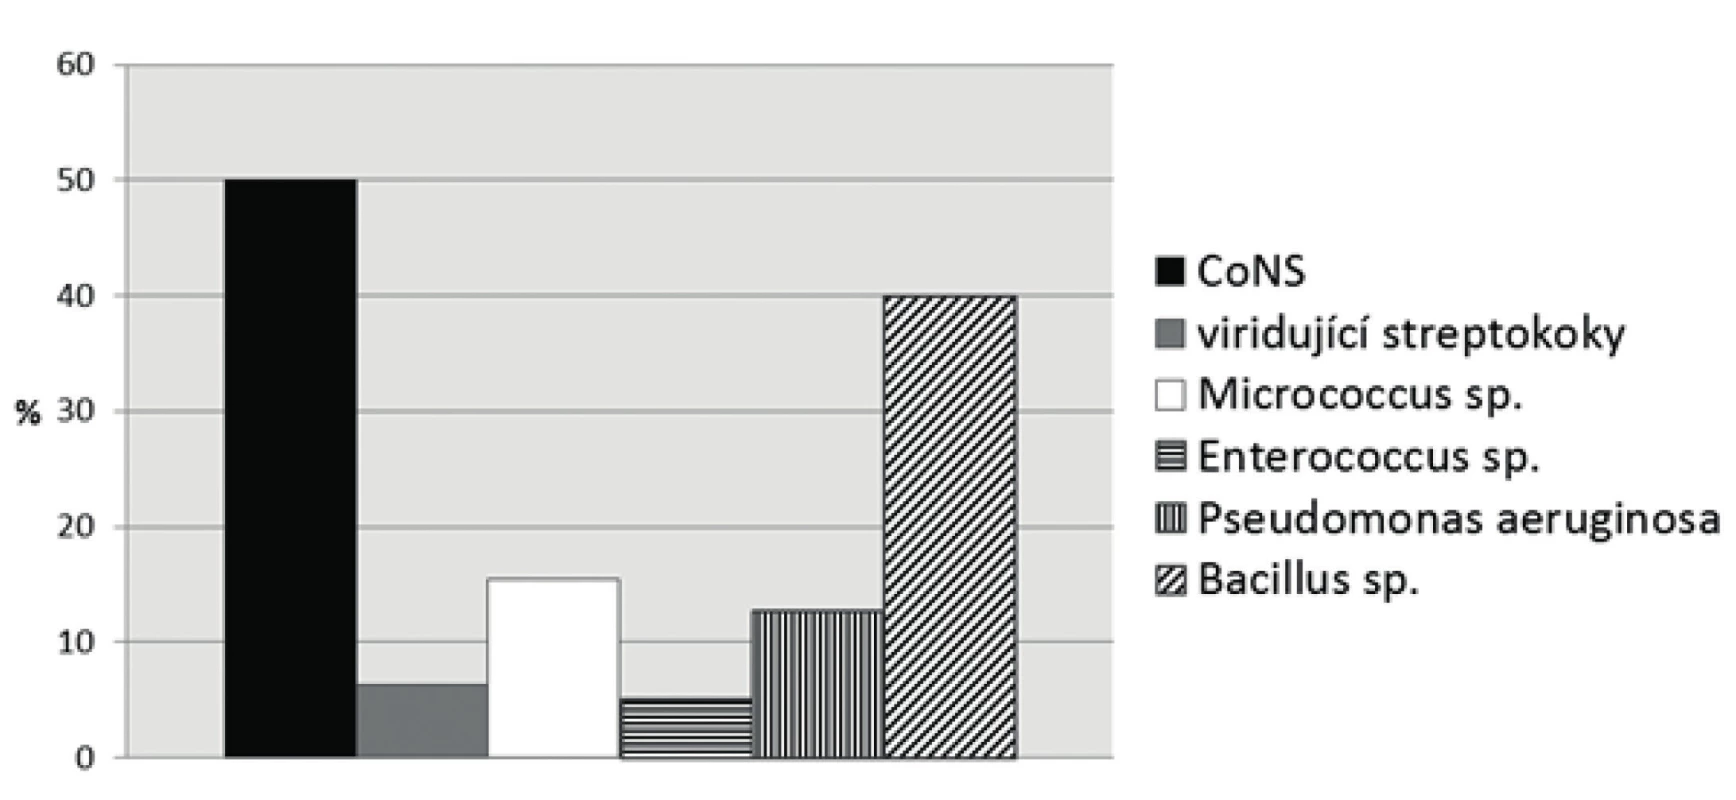 Procentuální zastoupení prokázaných mikrobů v prostorech ortodontické ambulance
Fig. 1 Percentage distribution of the microbes detected in dental offices